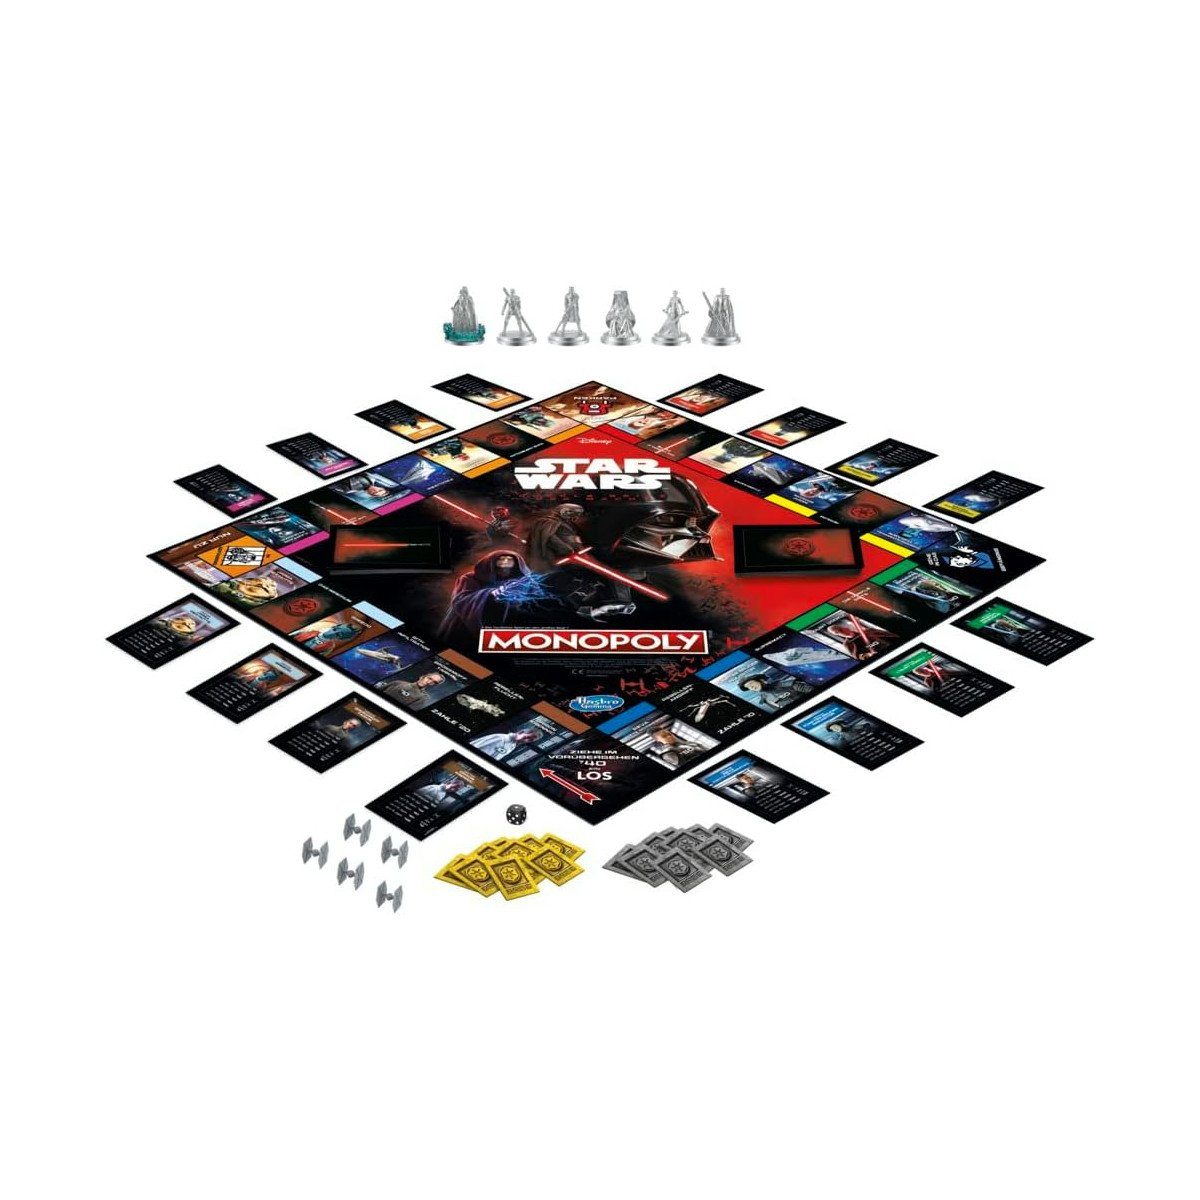 Dunkle Brettspiel Macht Hasbro Monopoly Seite Star Wars: Spiel, der